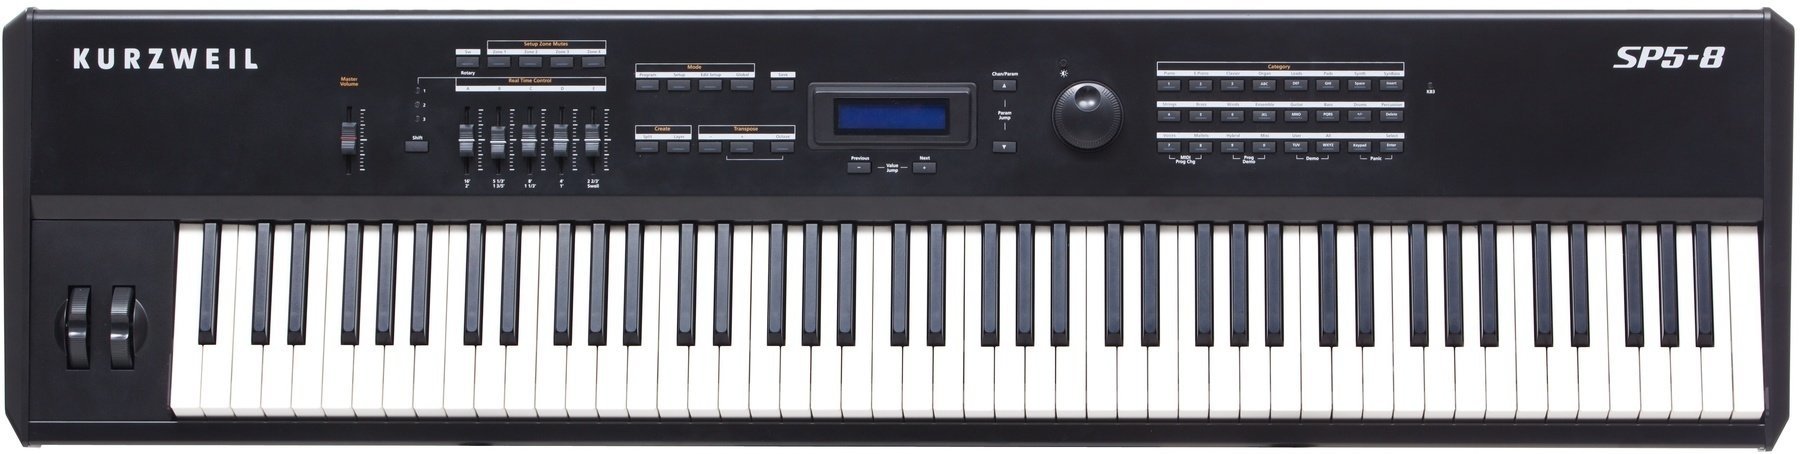 Digitálne stage piano Kurzweil SP5-8